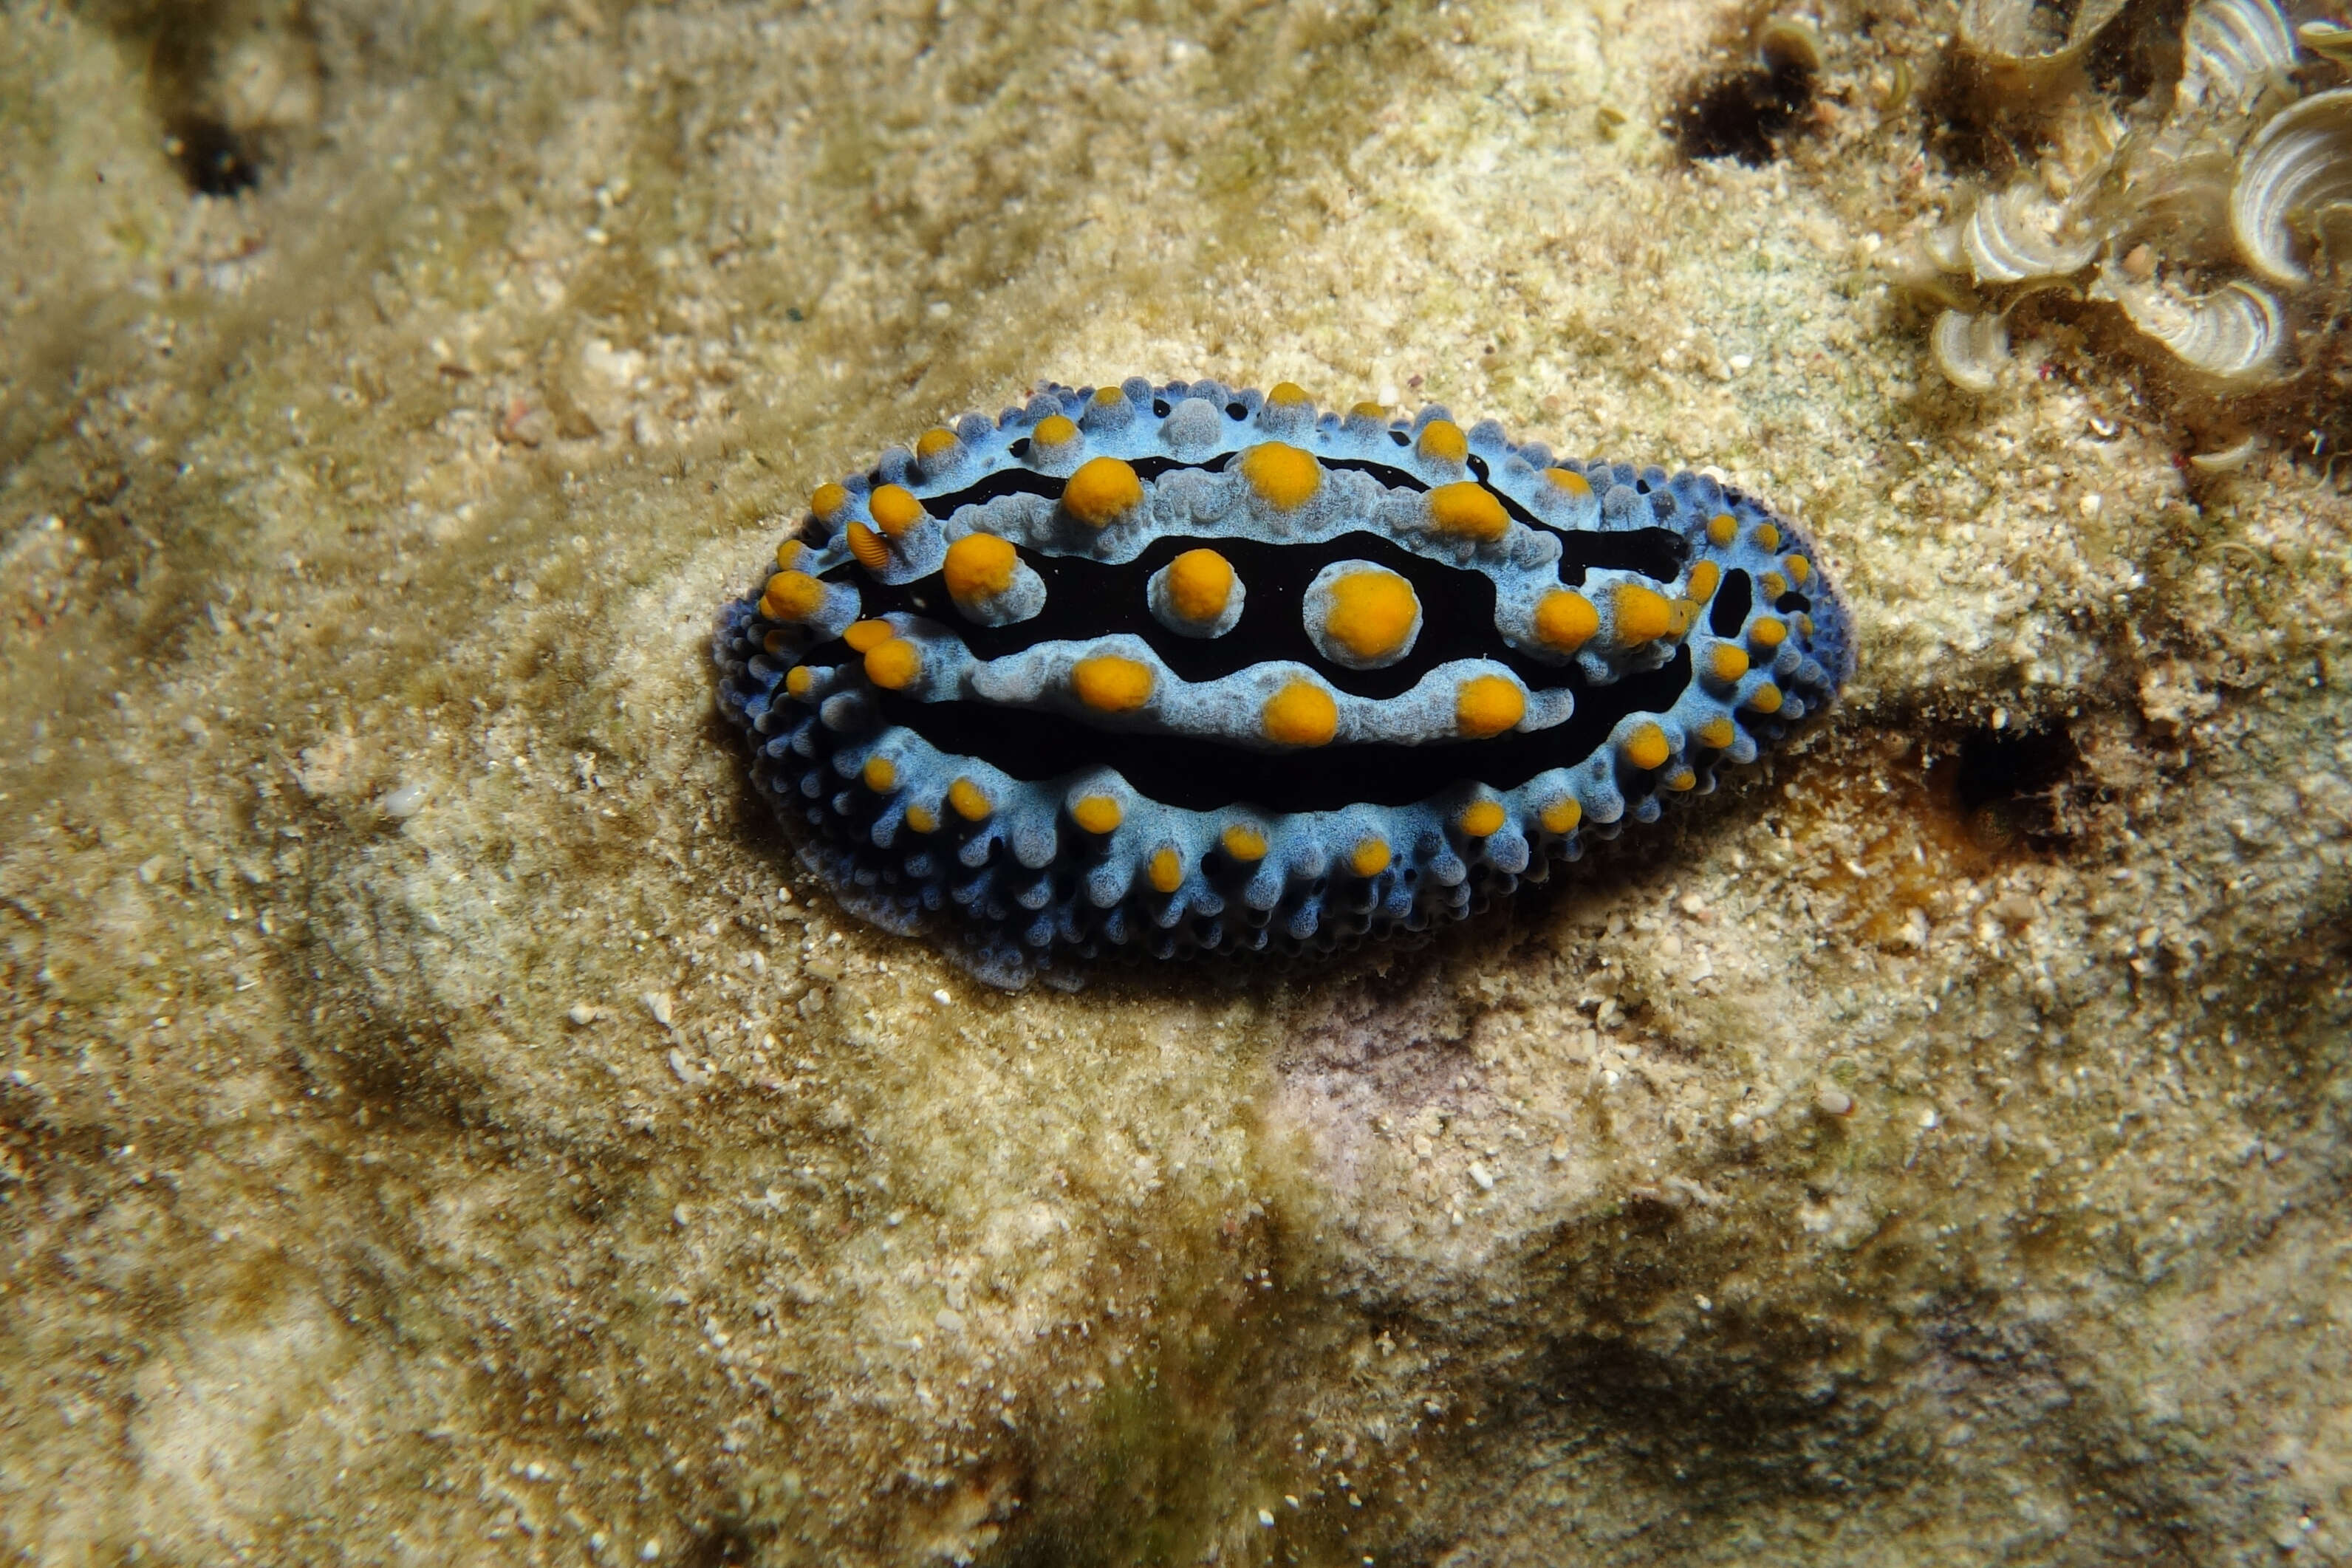 Image of Lumpy black blue orange slug